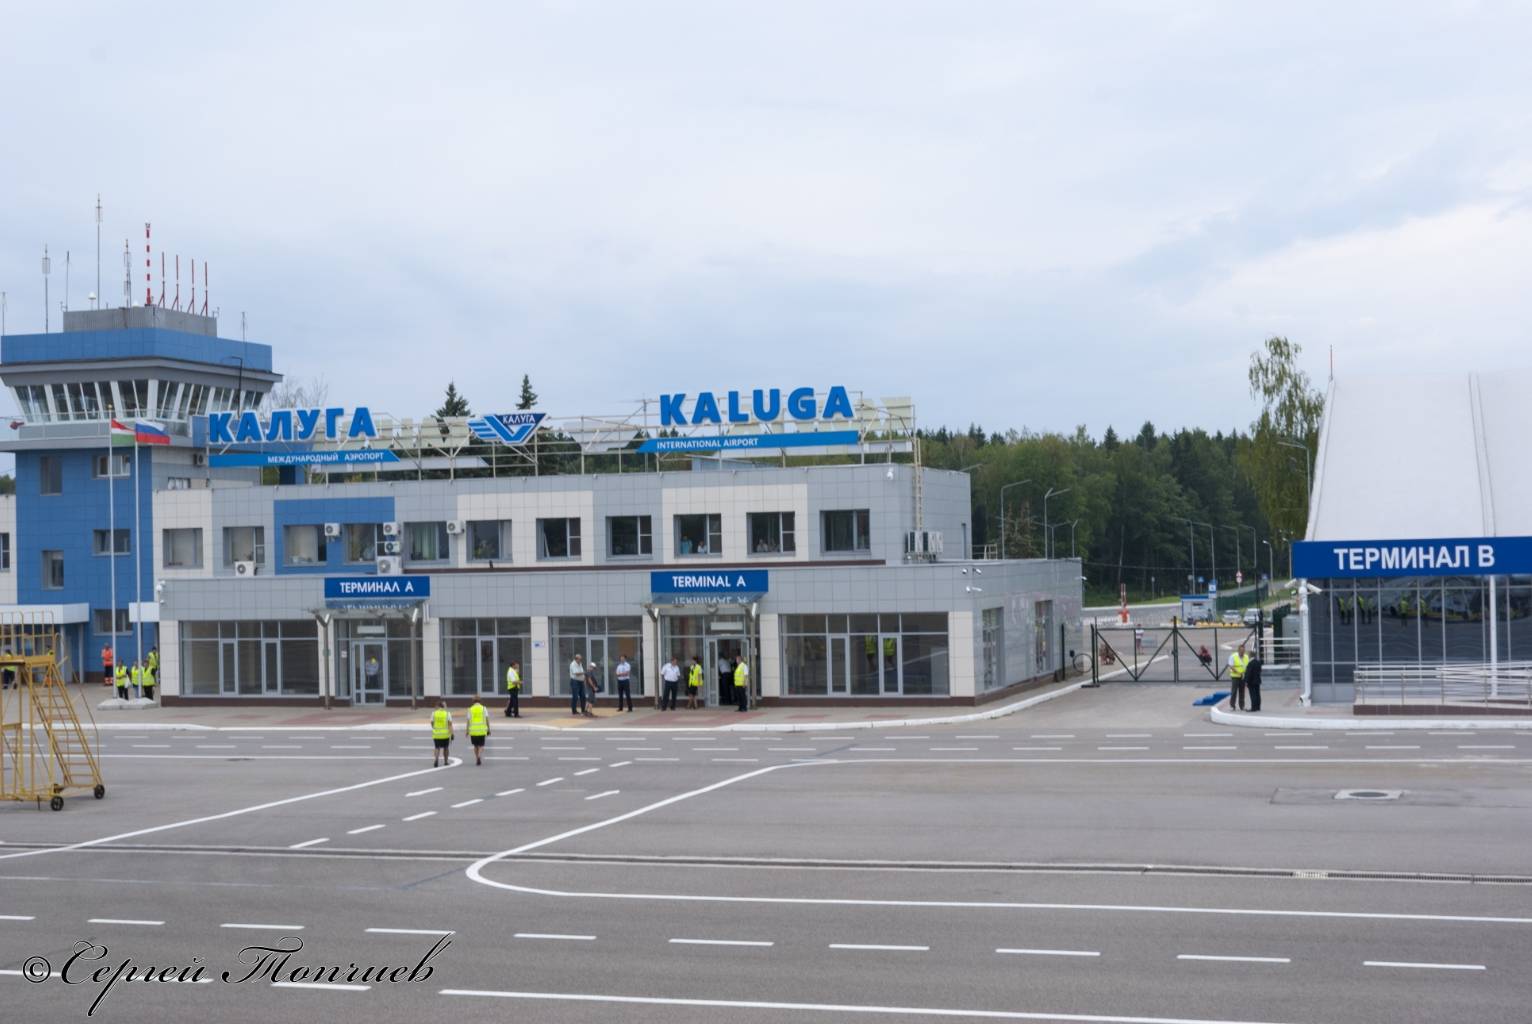 Аэропорт калуга вылеты. Международный аэропорт Калуга. Аэропорт Грабцево Калуга. Аэропорт Калуга терминал в.